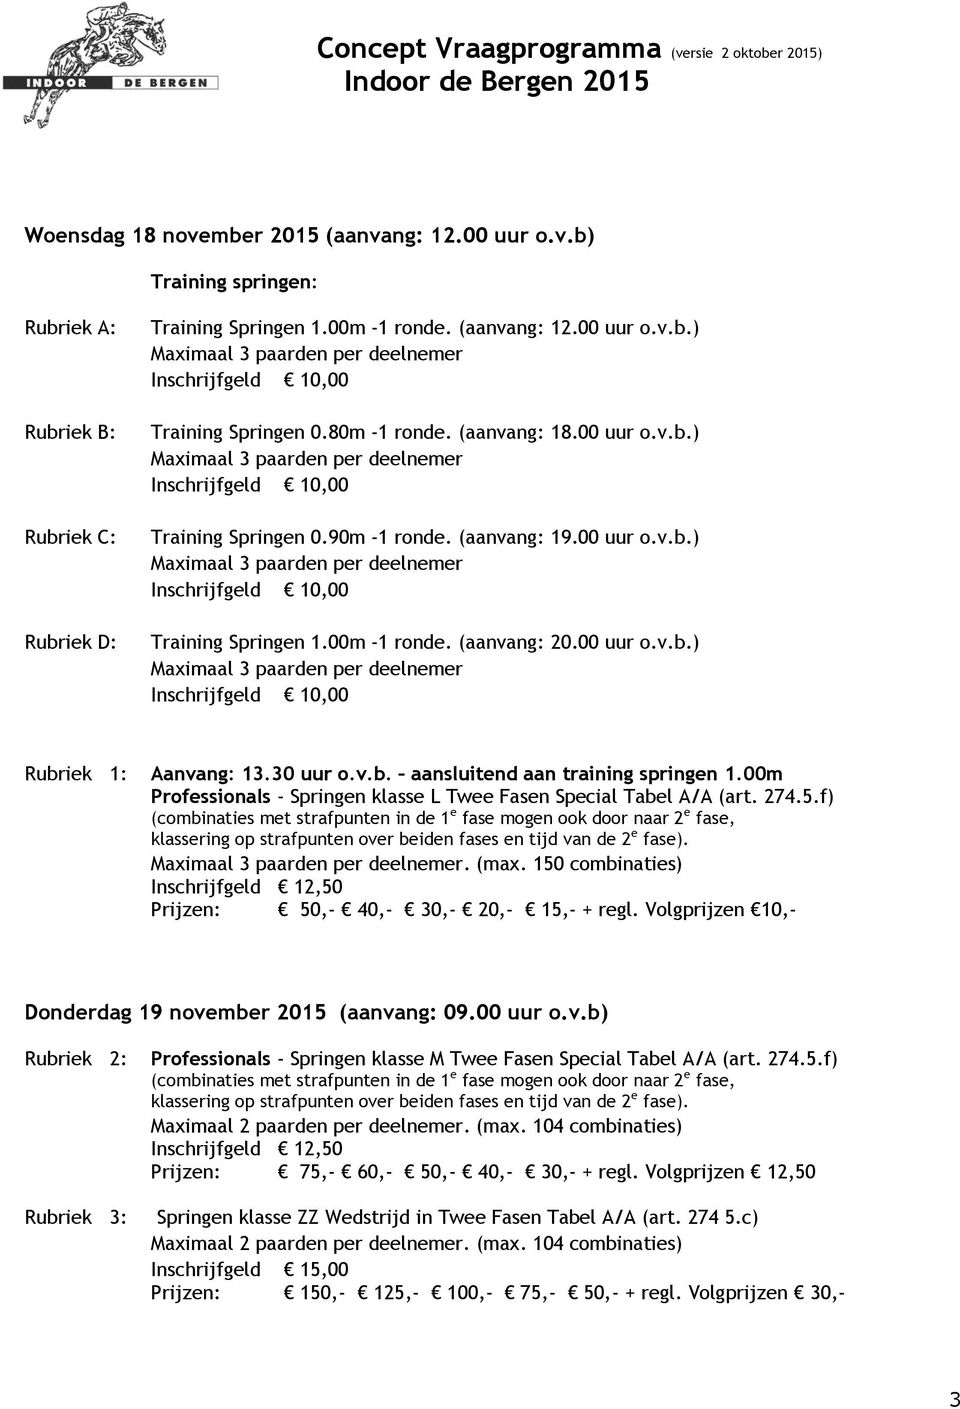 00m Professionals - Springen klasse L Twee Fasen Special Tabel A/A (art. 274.5.